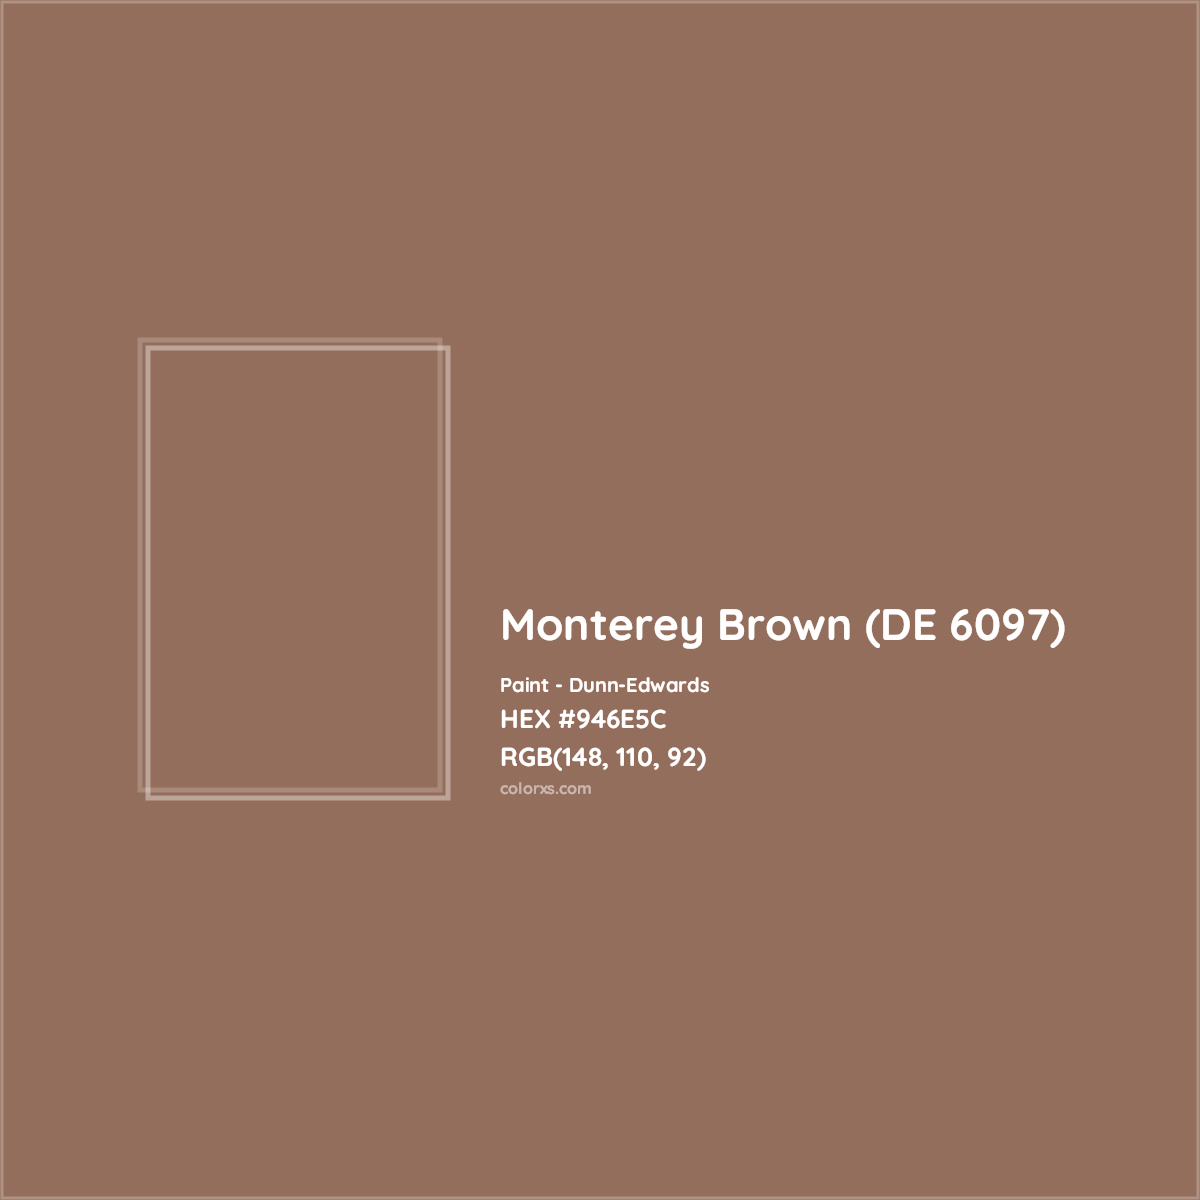 HEX #946E5C Monterey Brown (DE 6097) Paint Dunn-Edwards - Color Code